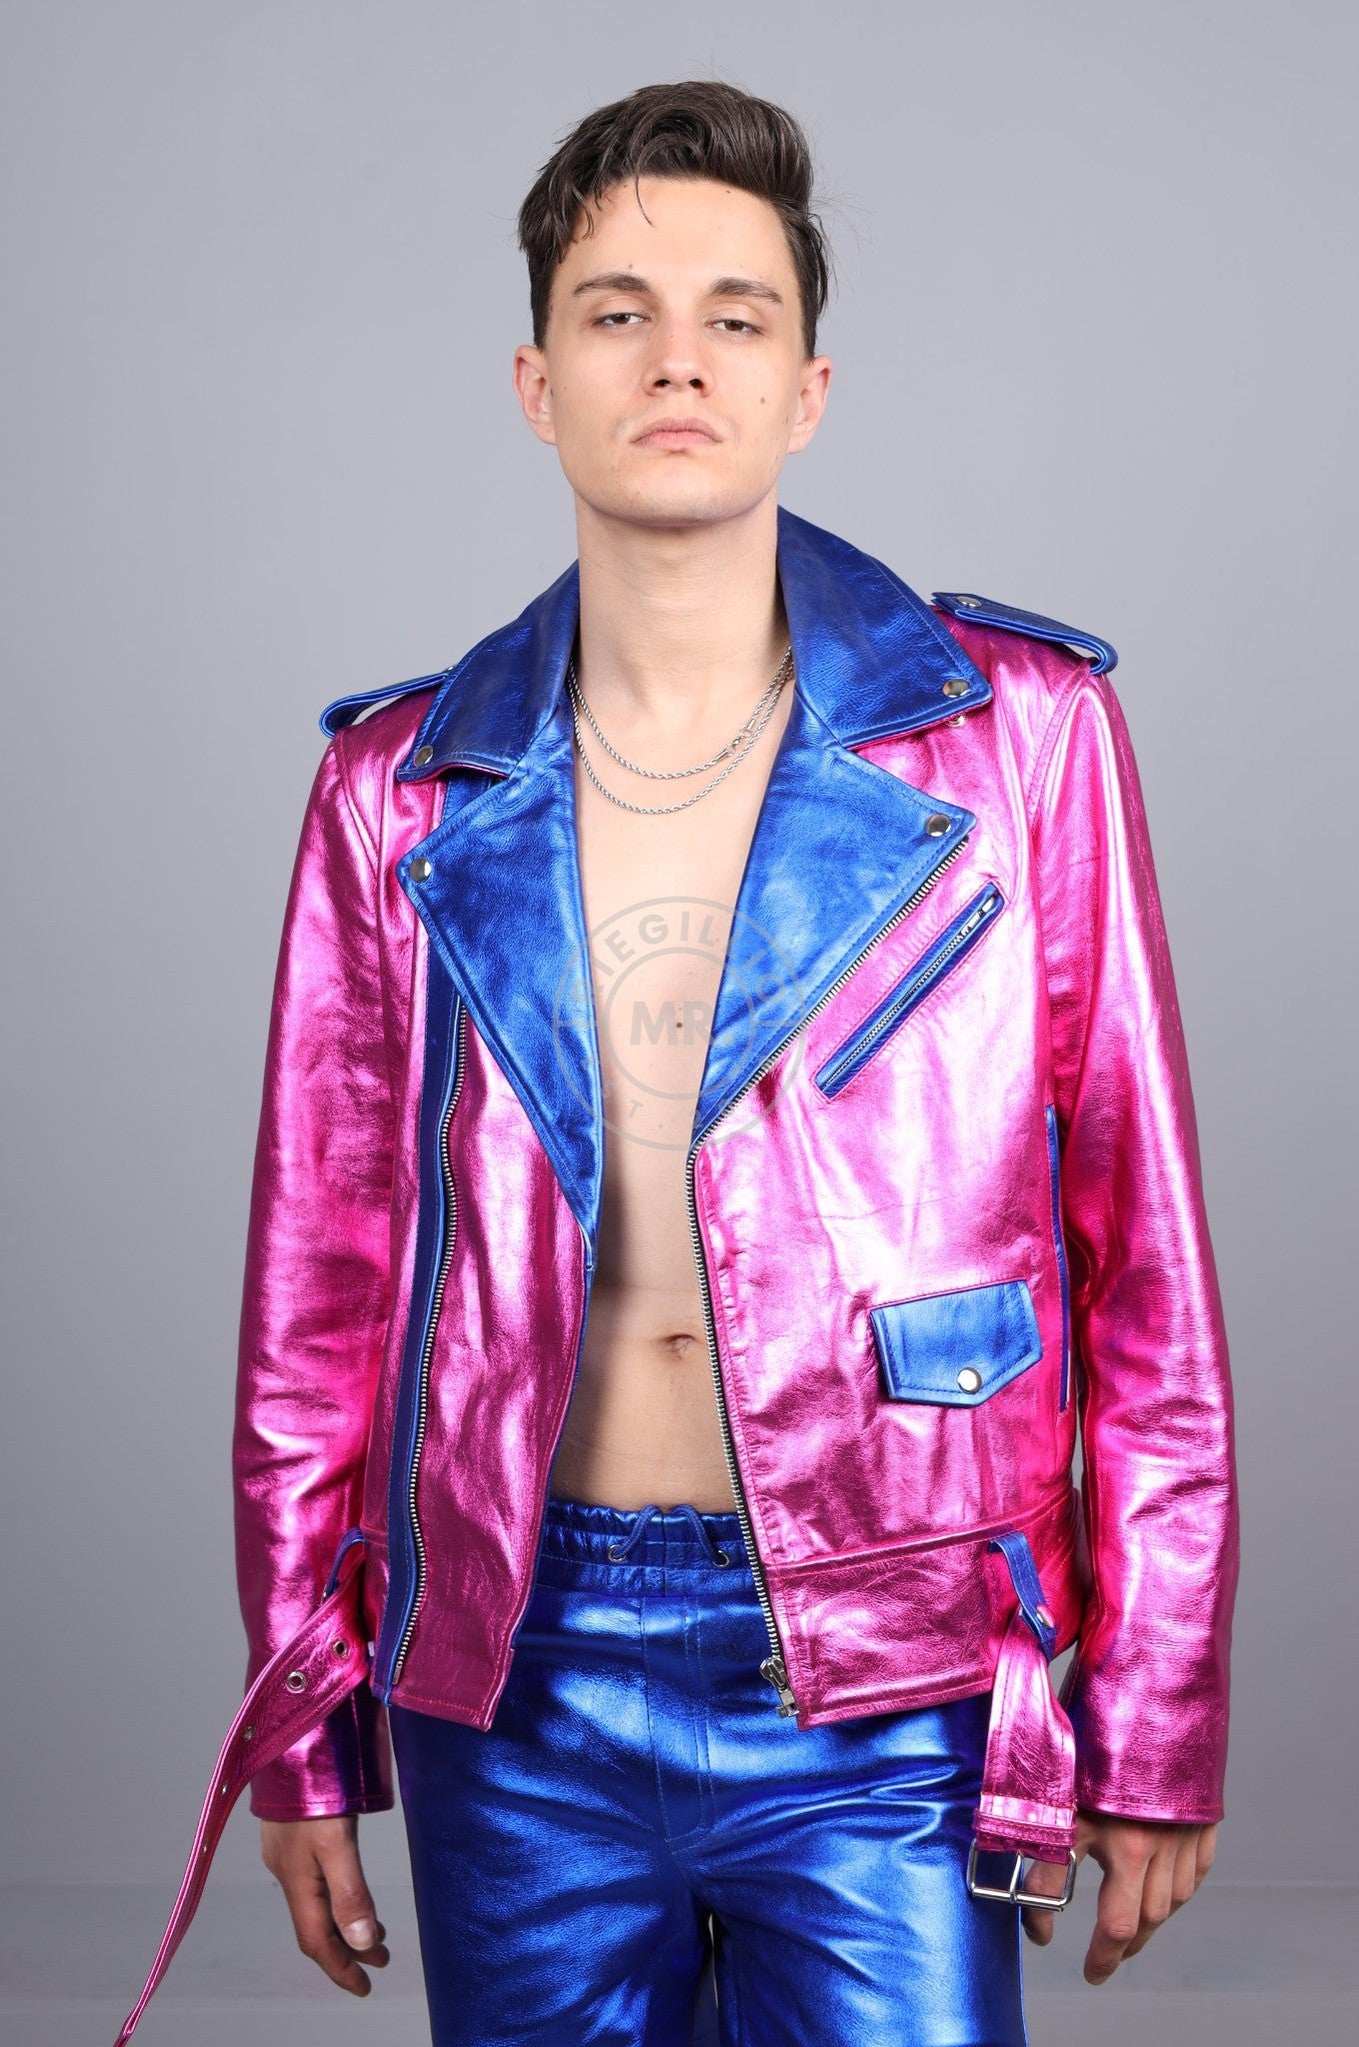 Metallic Leather Biker Jacket - Pink/Blue at MR. Riegillio